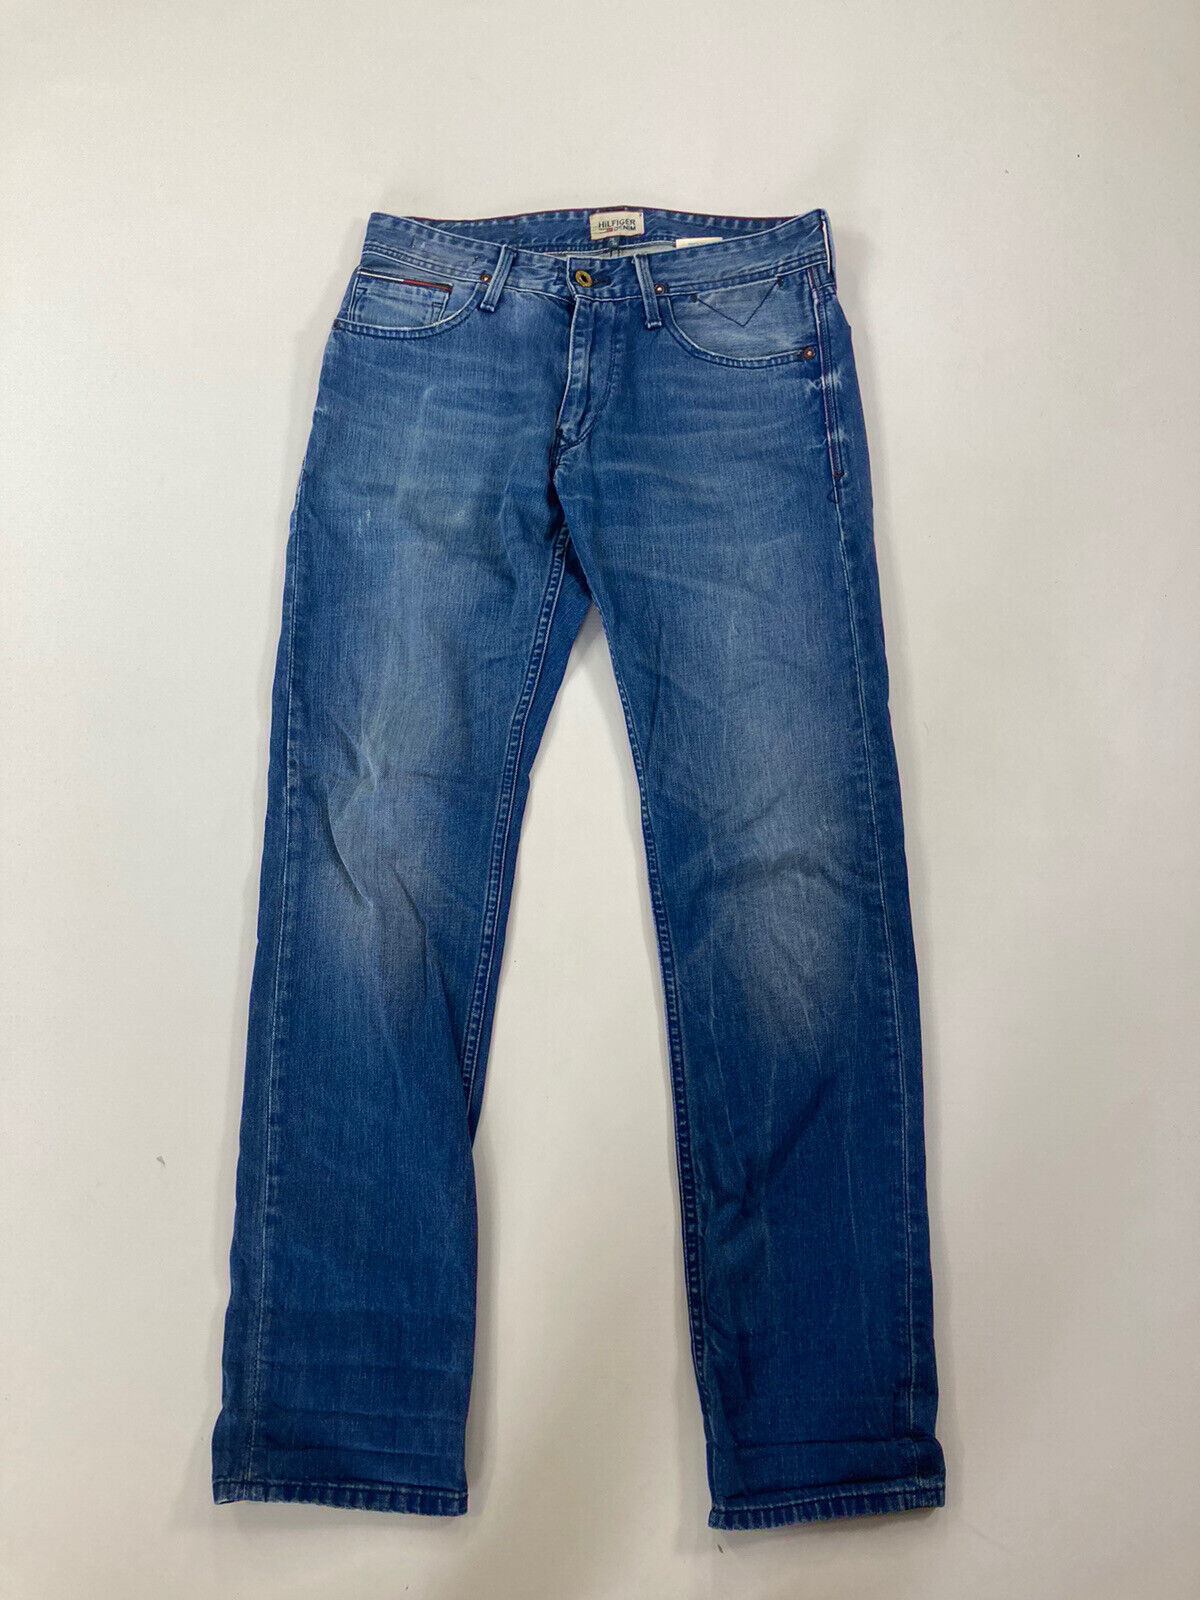 TOMMY HILFIGER RYAN Jeans - W29 L32 - Blue - Grea… - image 1